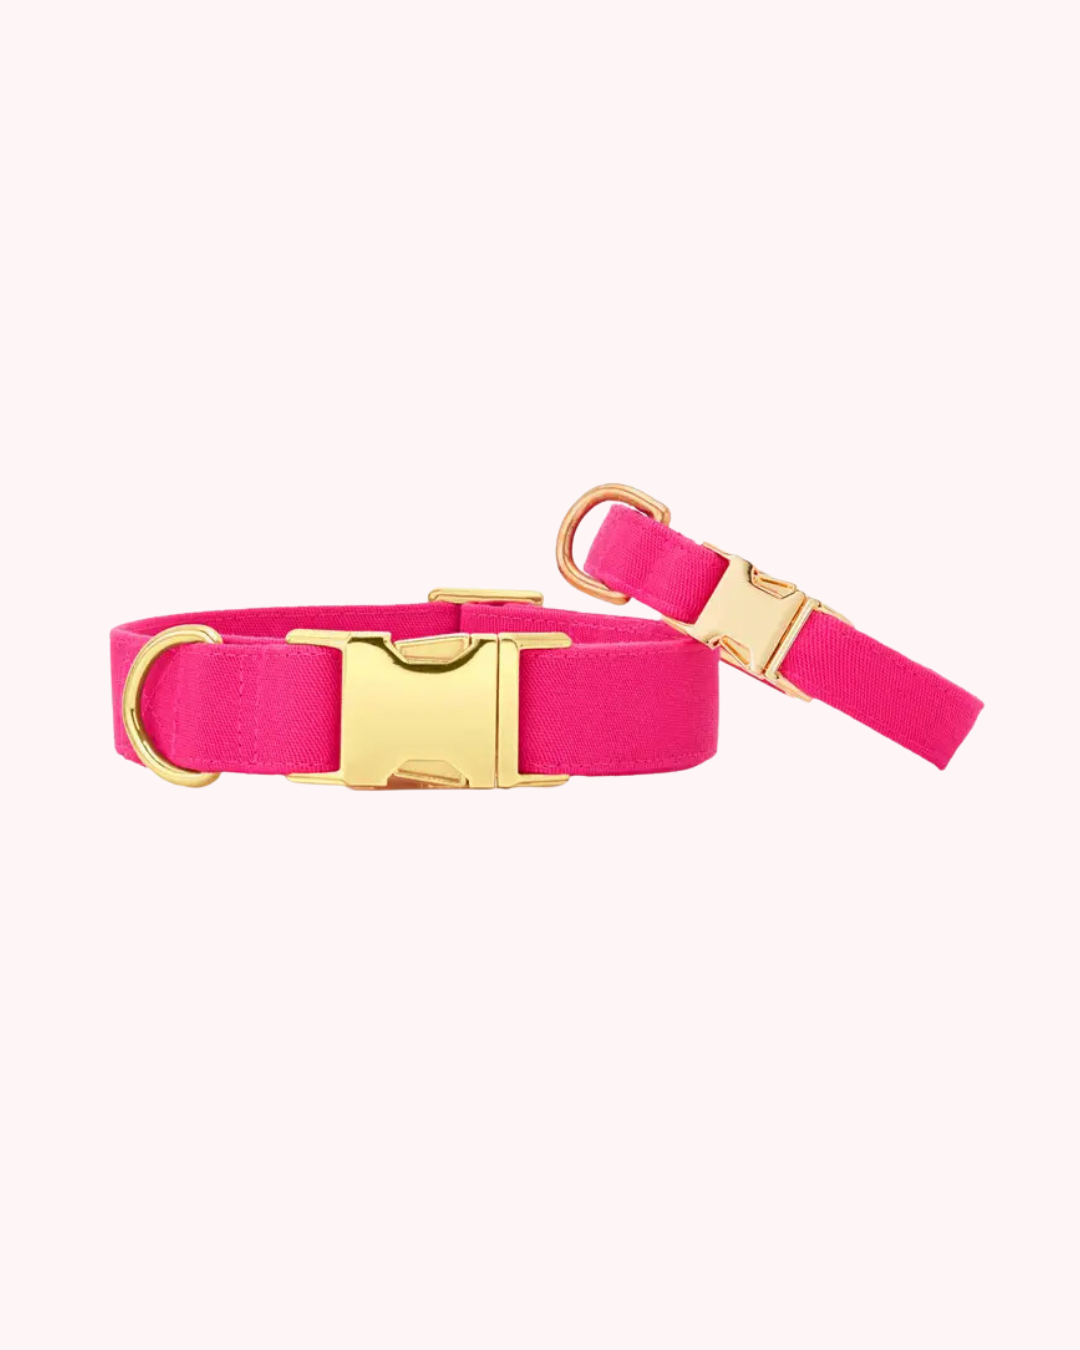 The Foggy Dog - Hot Pink Dog Collar